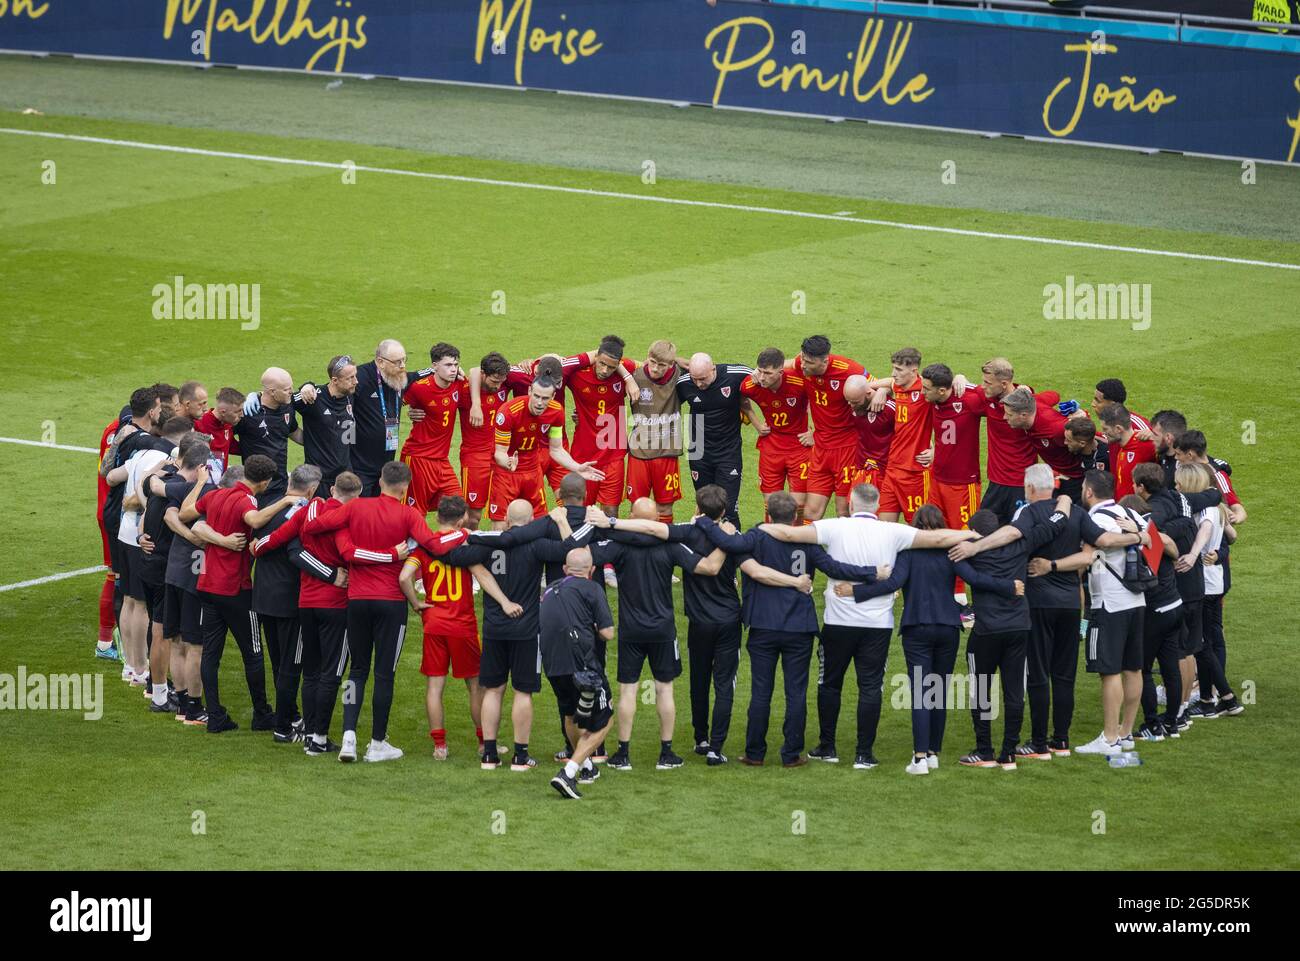 Gareth Bale (Wales) baut sein Team wieder auf  Wales - Dänemark Amsterdam, 26.06.2021, Fussball, Saison 2020/21  Foto: Moritz Müller  Copyright (nur f Stock Photo